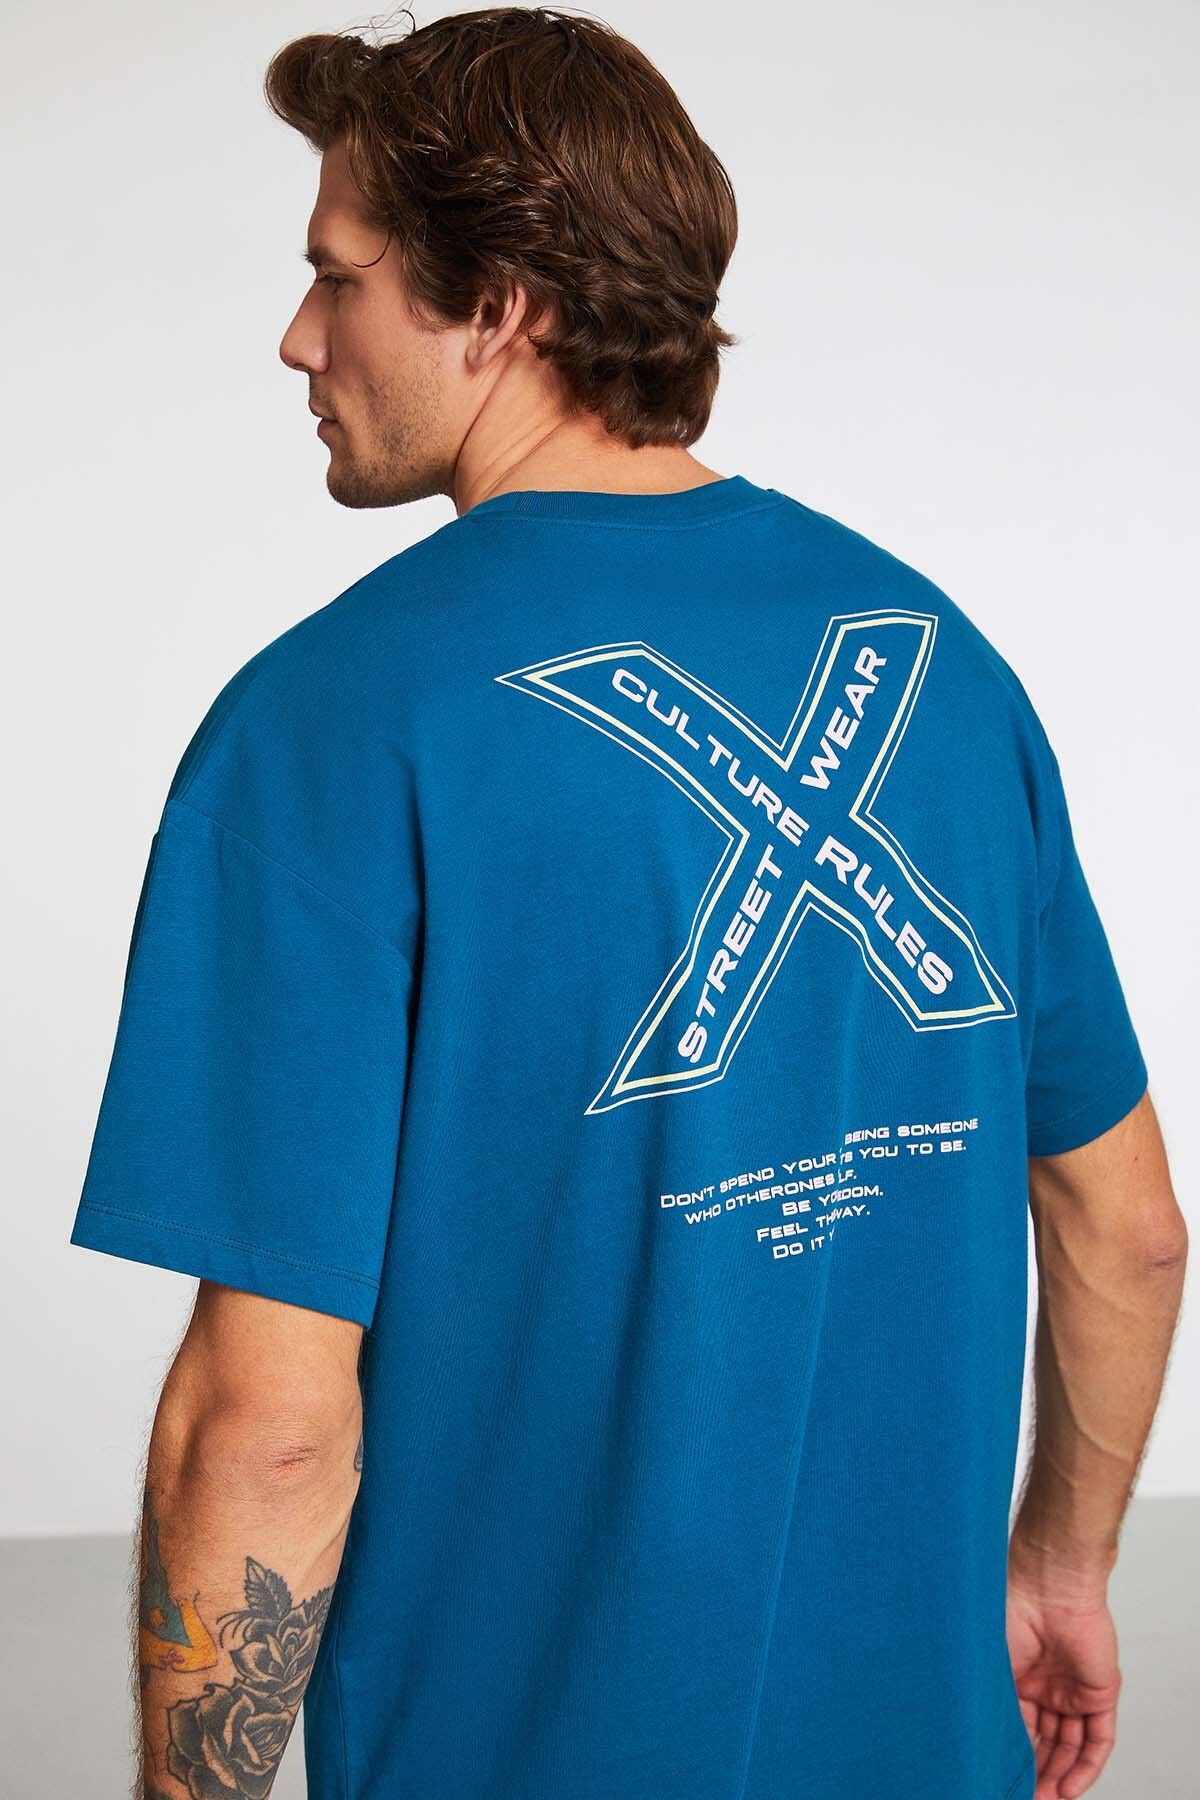 GRIMELANGE Hashtag Erkek Oversize Fit %100 Pamuk Kalın Dokulu Baskılı T-shirt